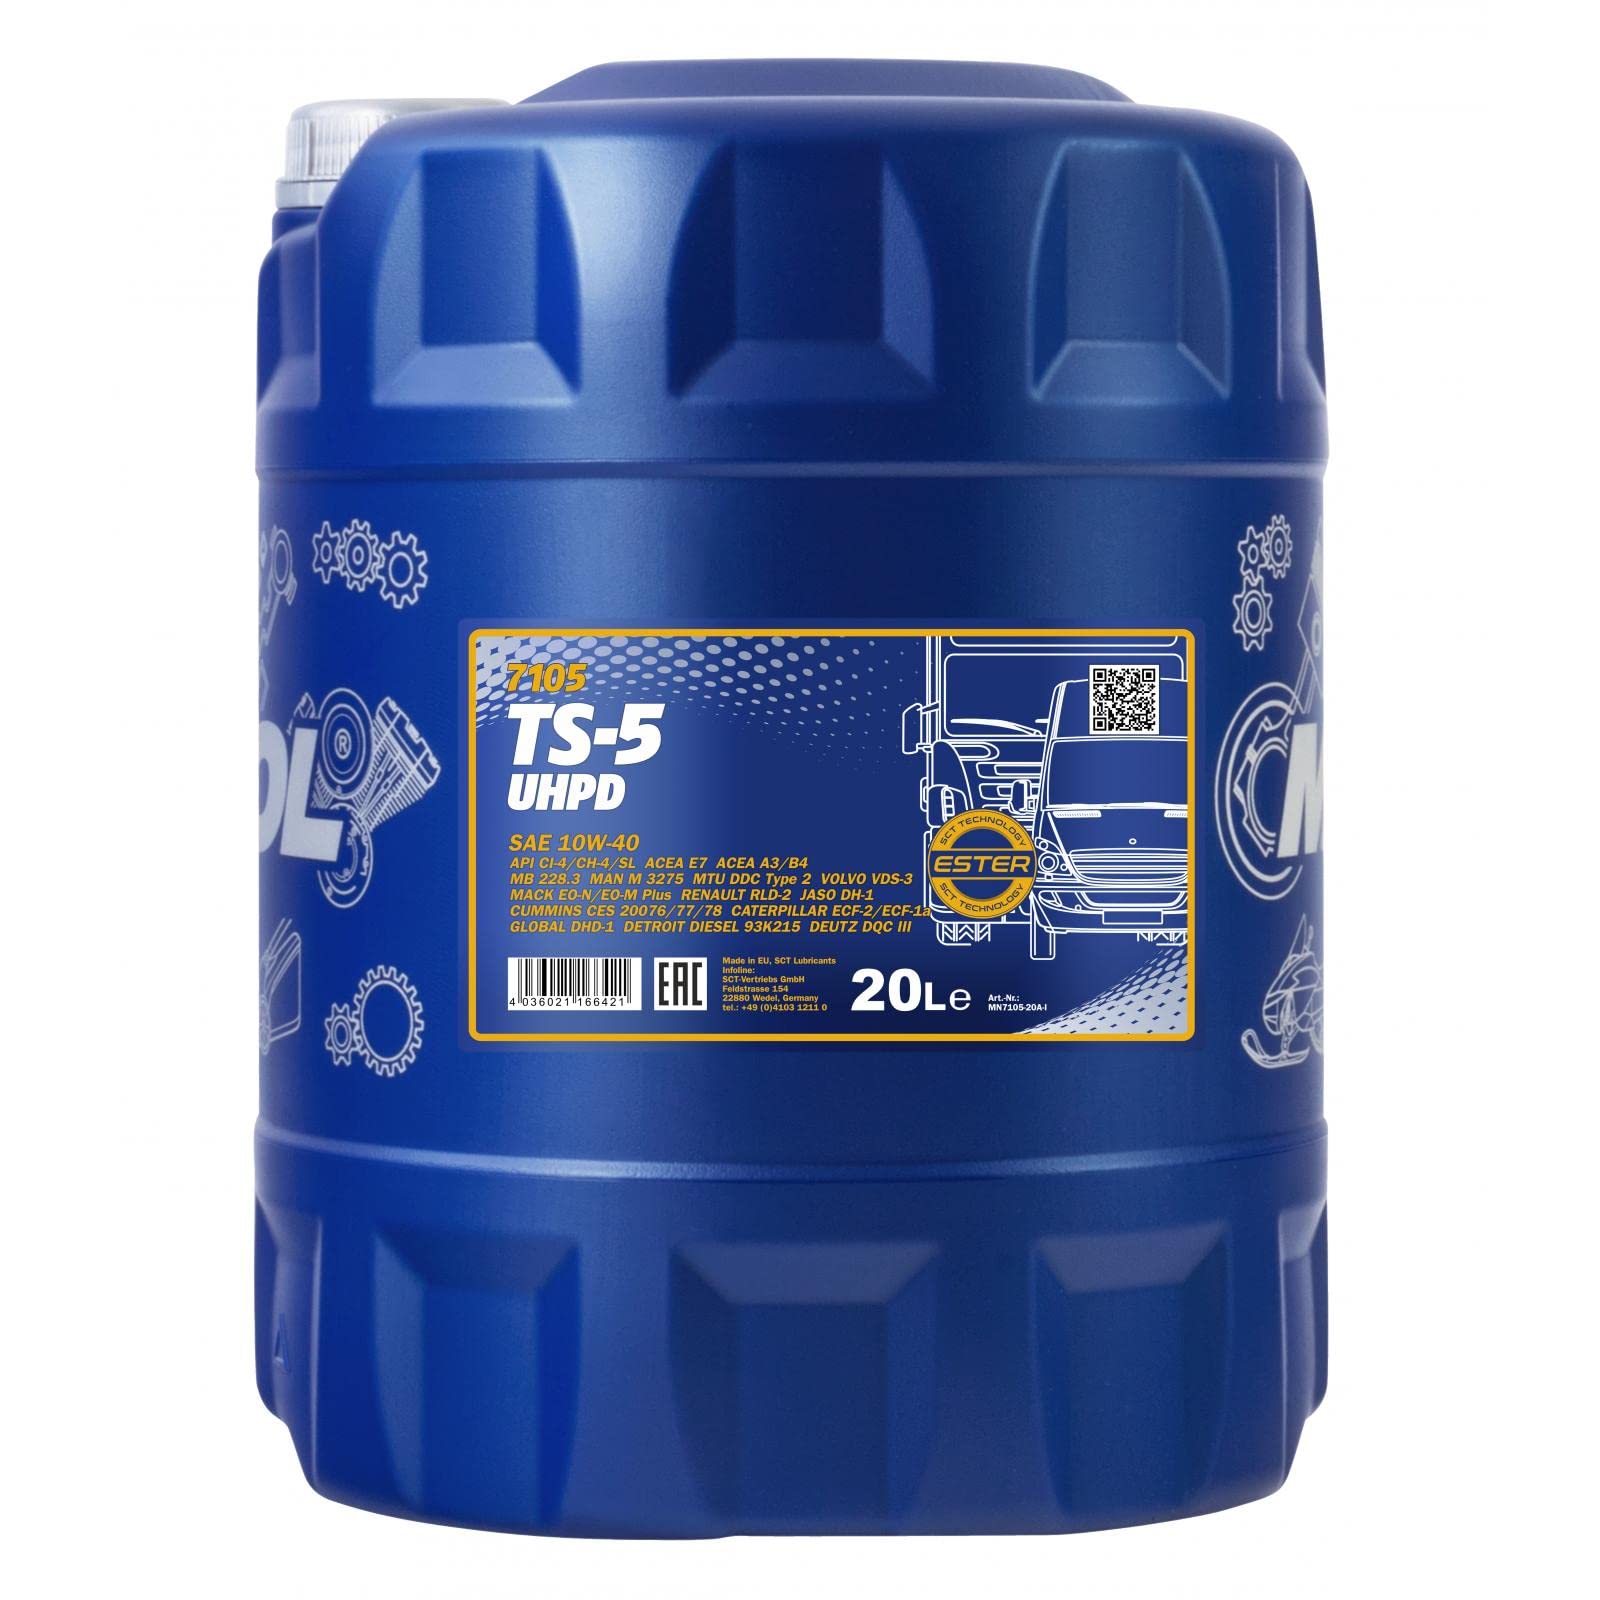 20 Liter Orignal MANNOL Motoröl TS-5 UHPD 10W-40 API Engine Oil Öl von MANNOL